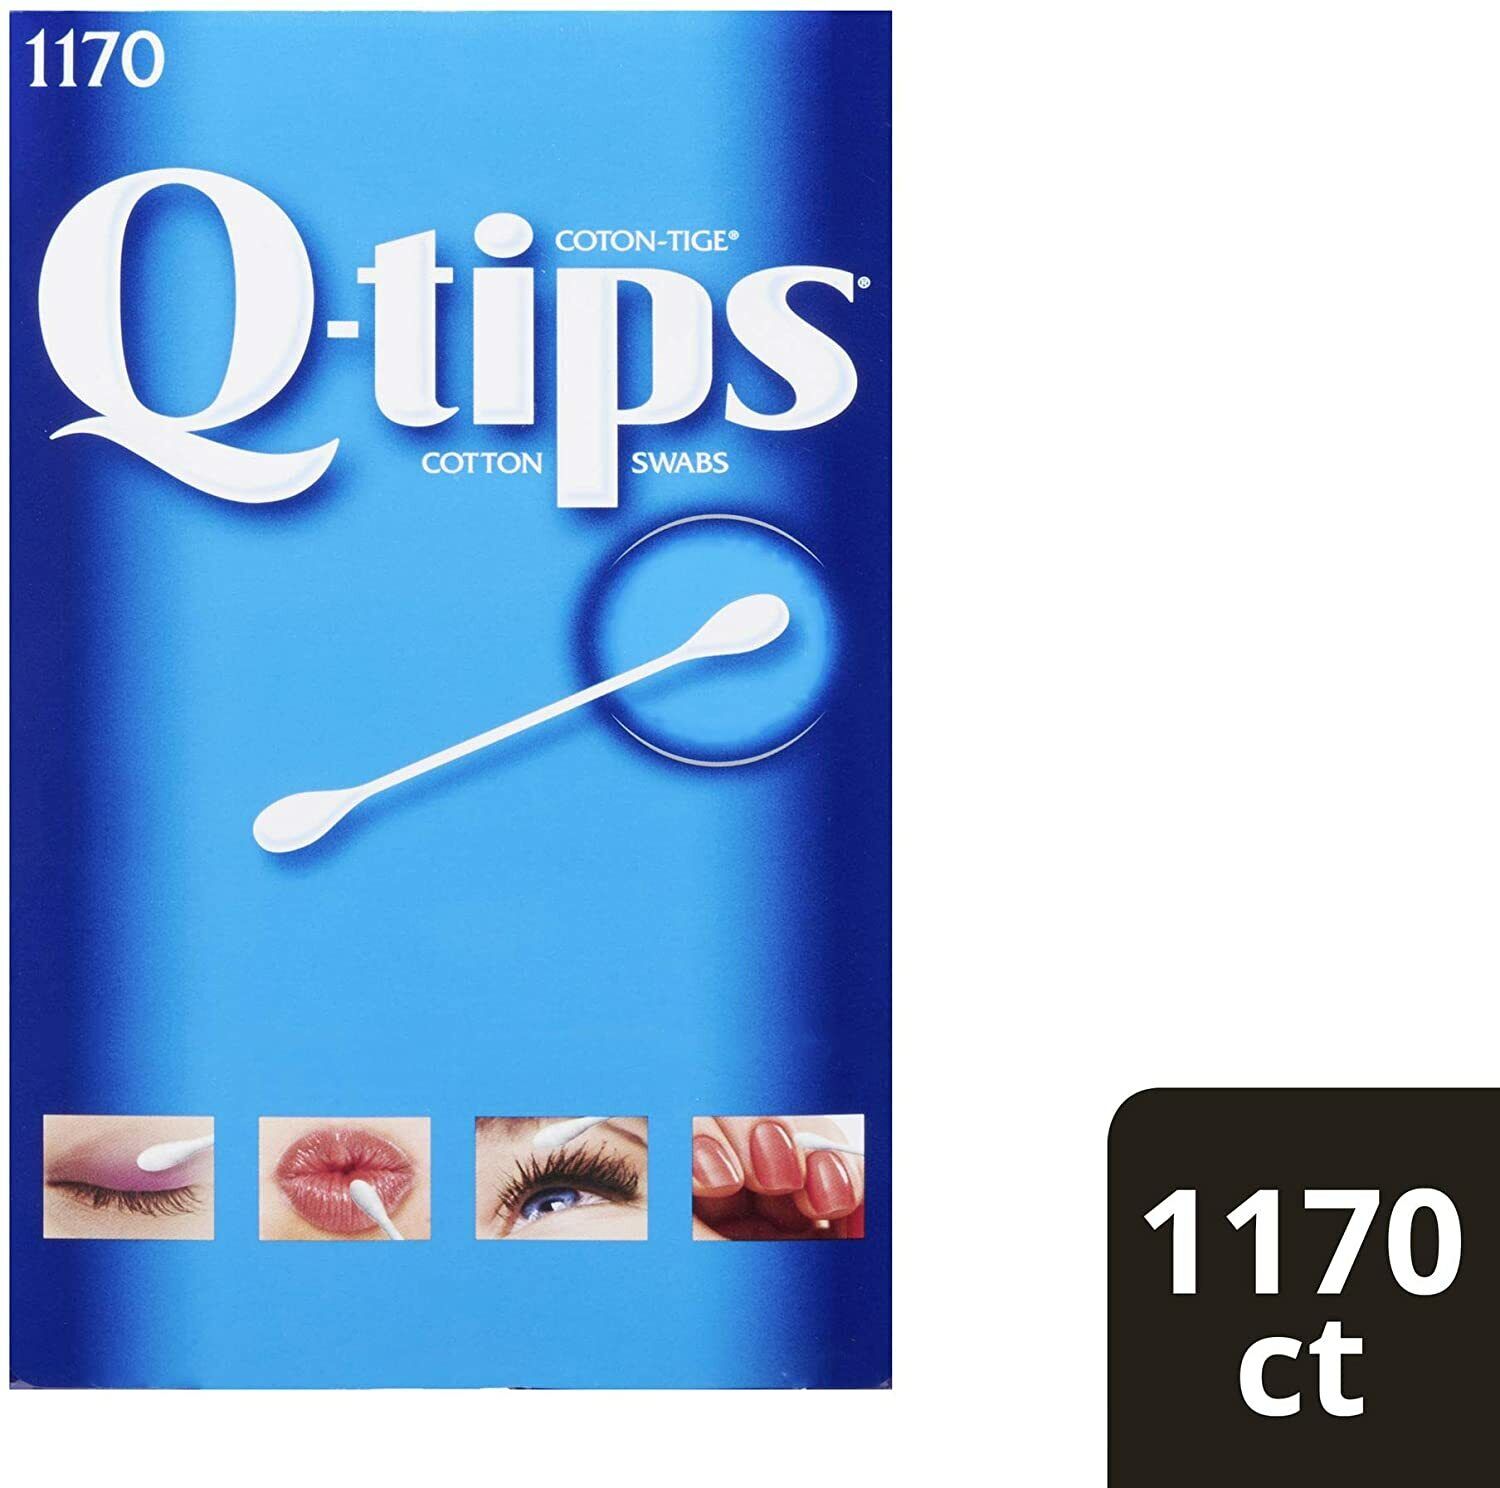 Q tips Cotton Swabs Original 1170 count Qtips Brand New